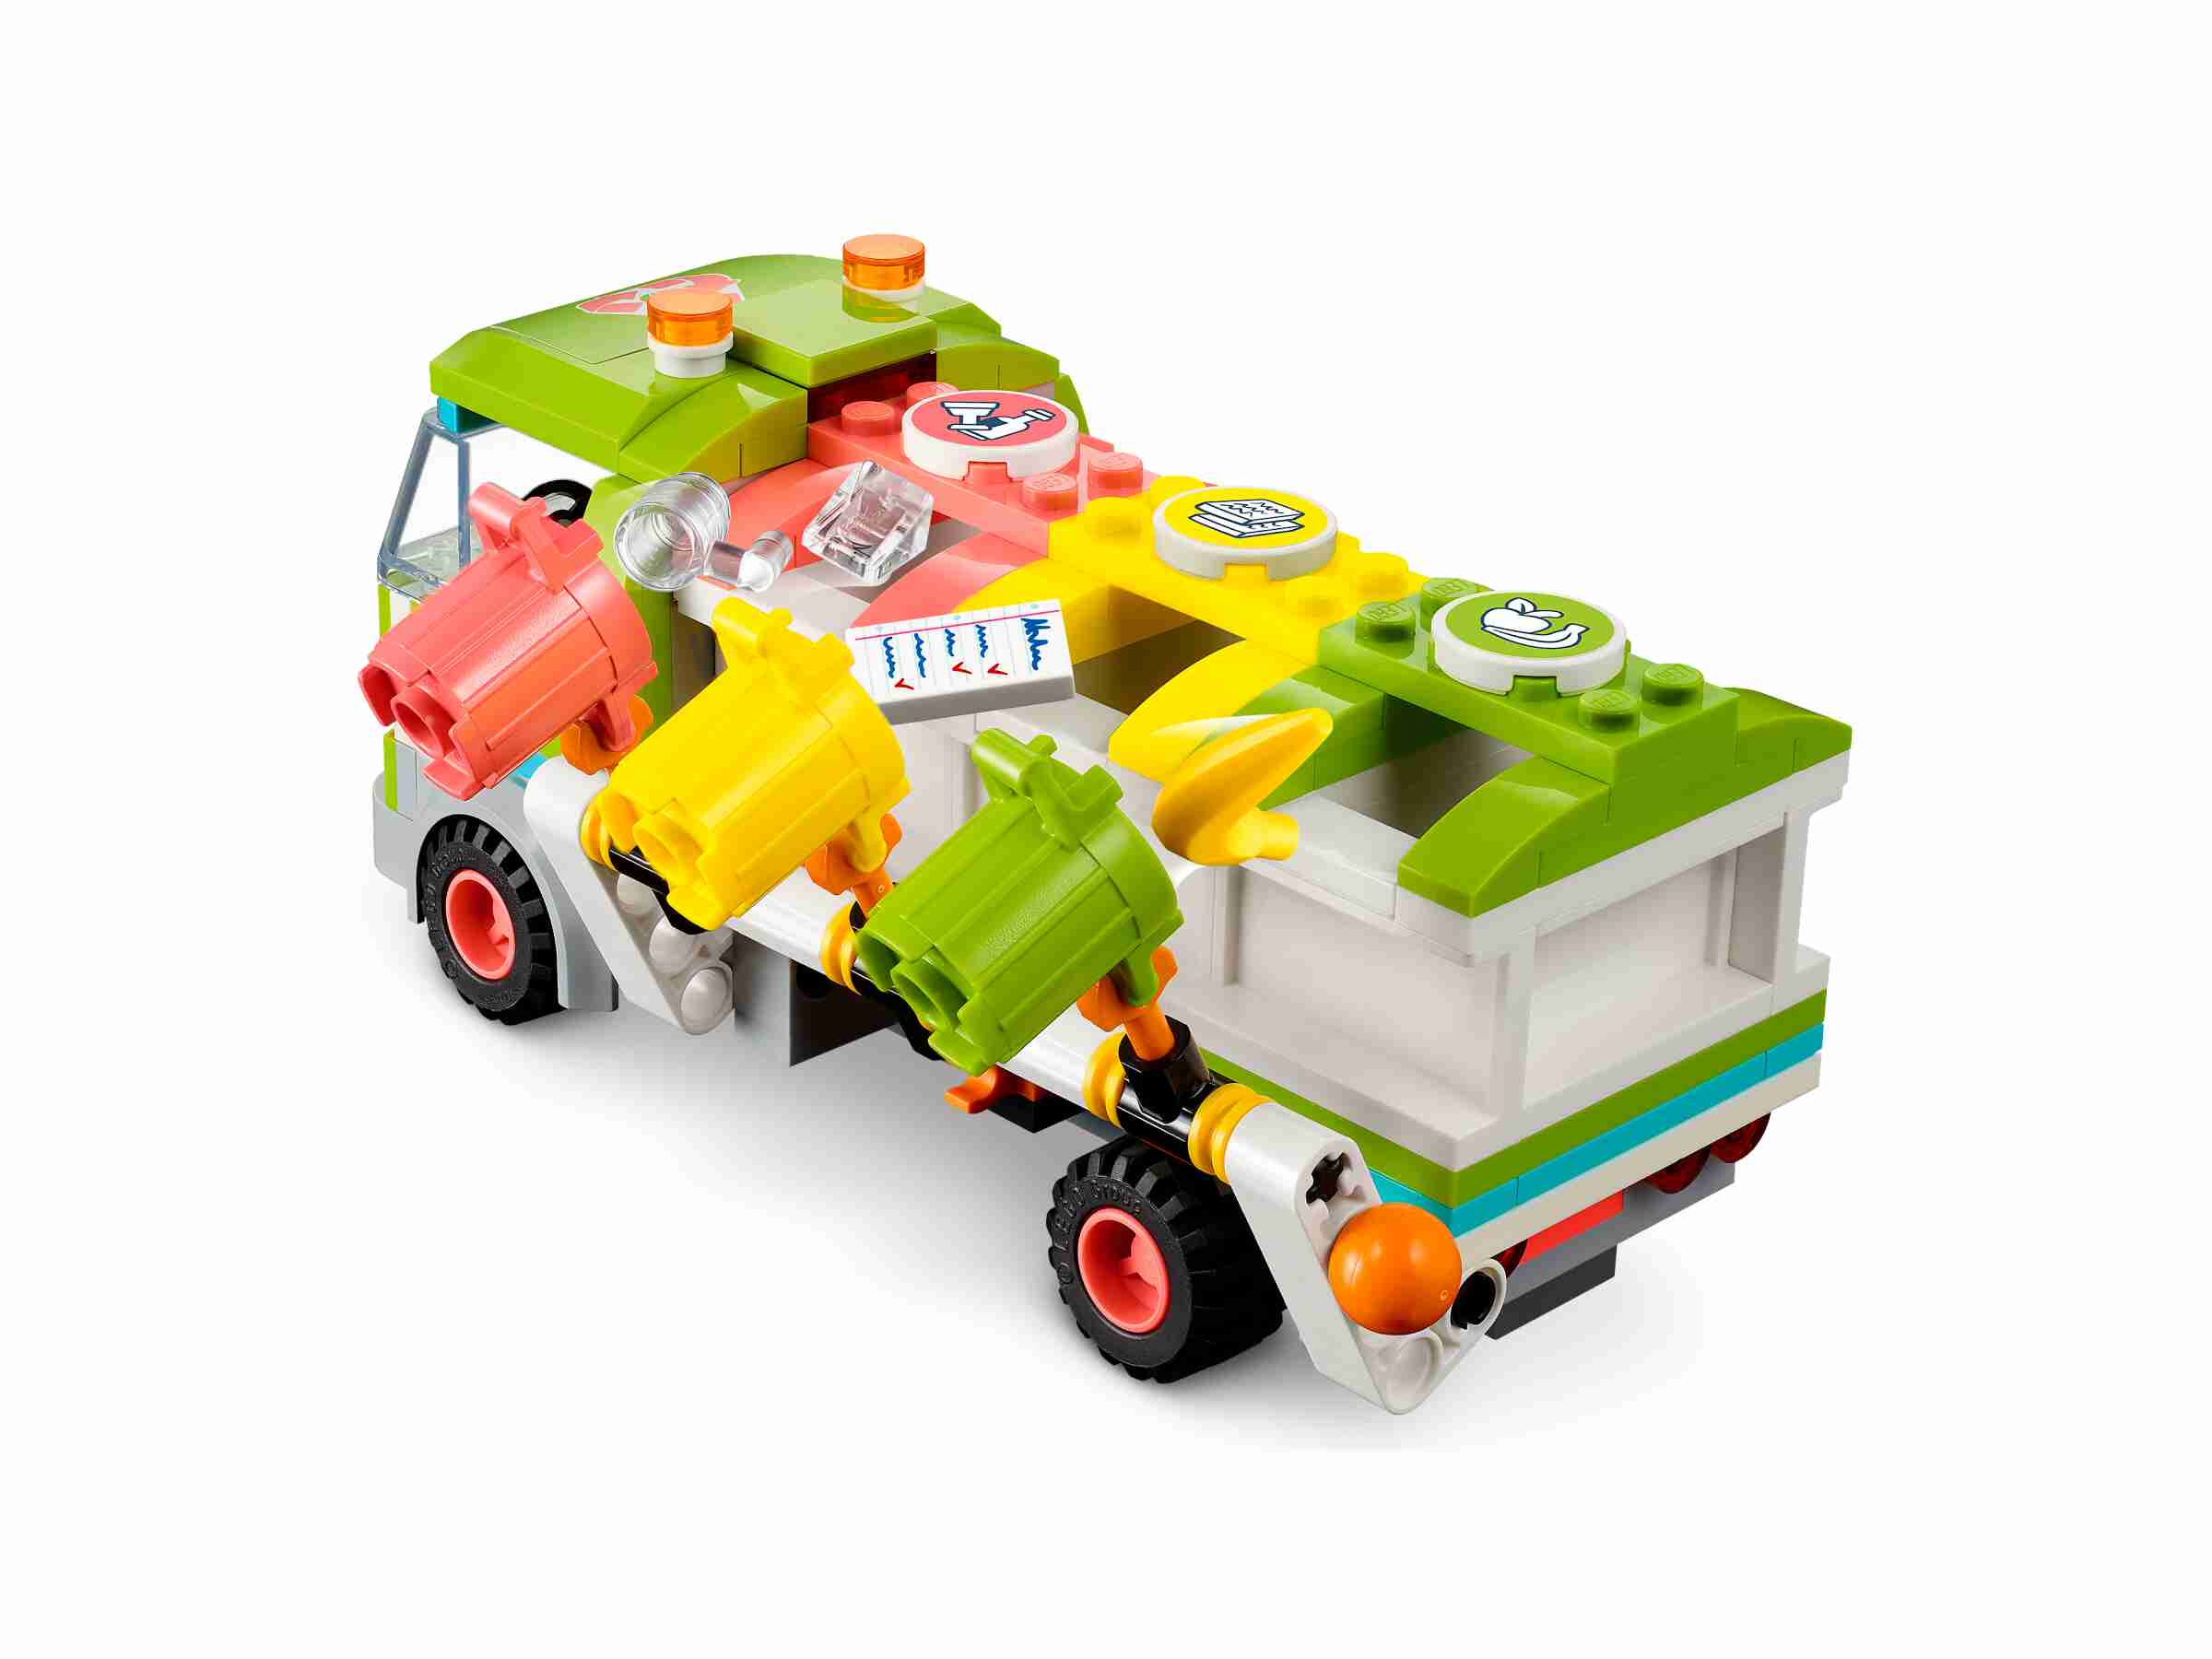 LEGO 41712 Friends Recycling-Auto mit Emma und River 3 Mülleimer, Papier